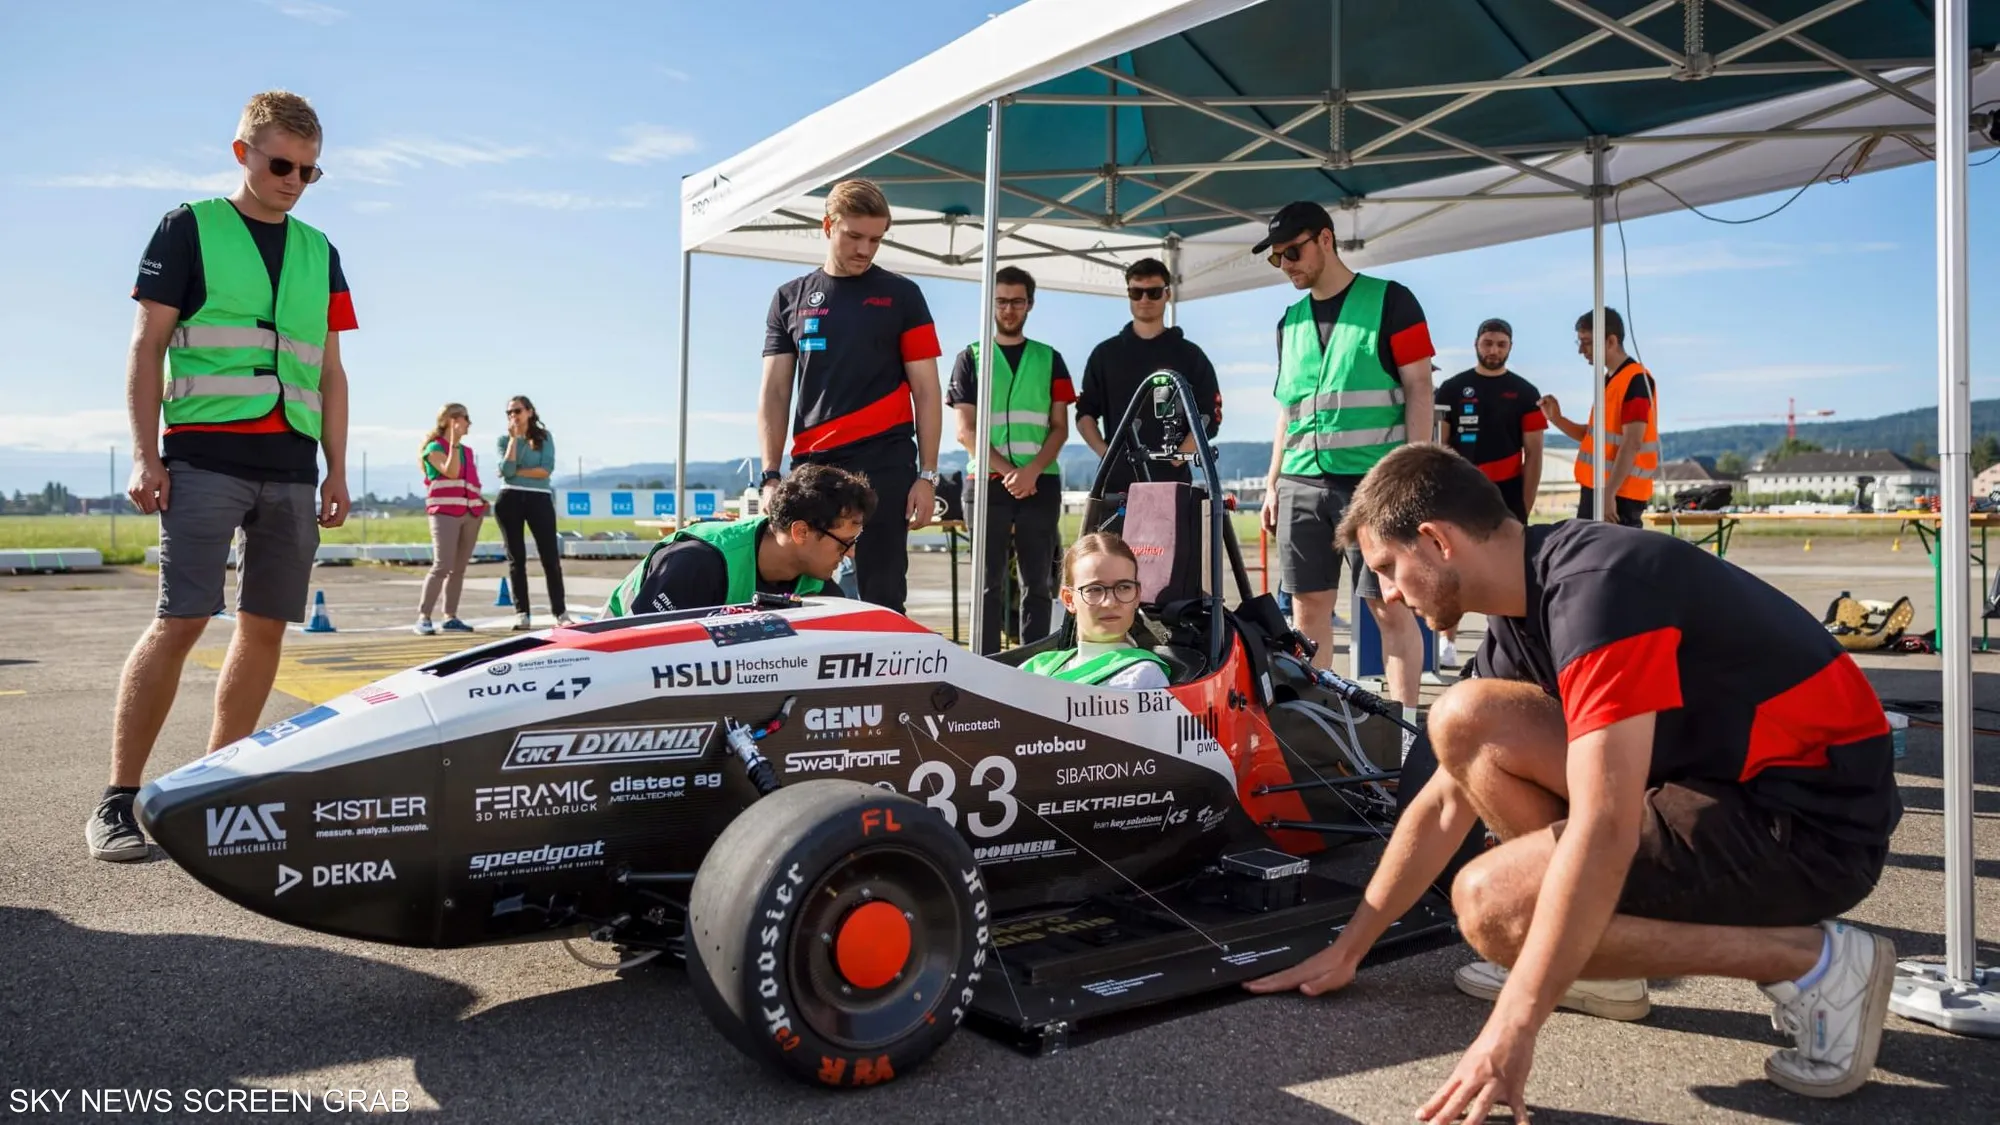 فريق طلابي سويسري يطور أسرع سيارة كهربائية في العالم